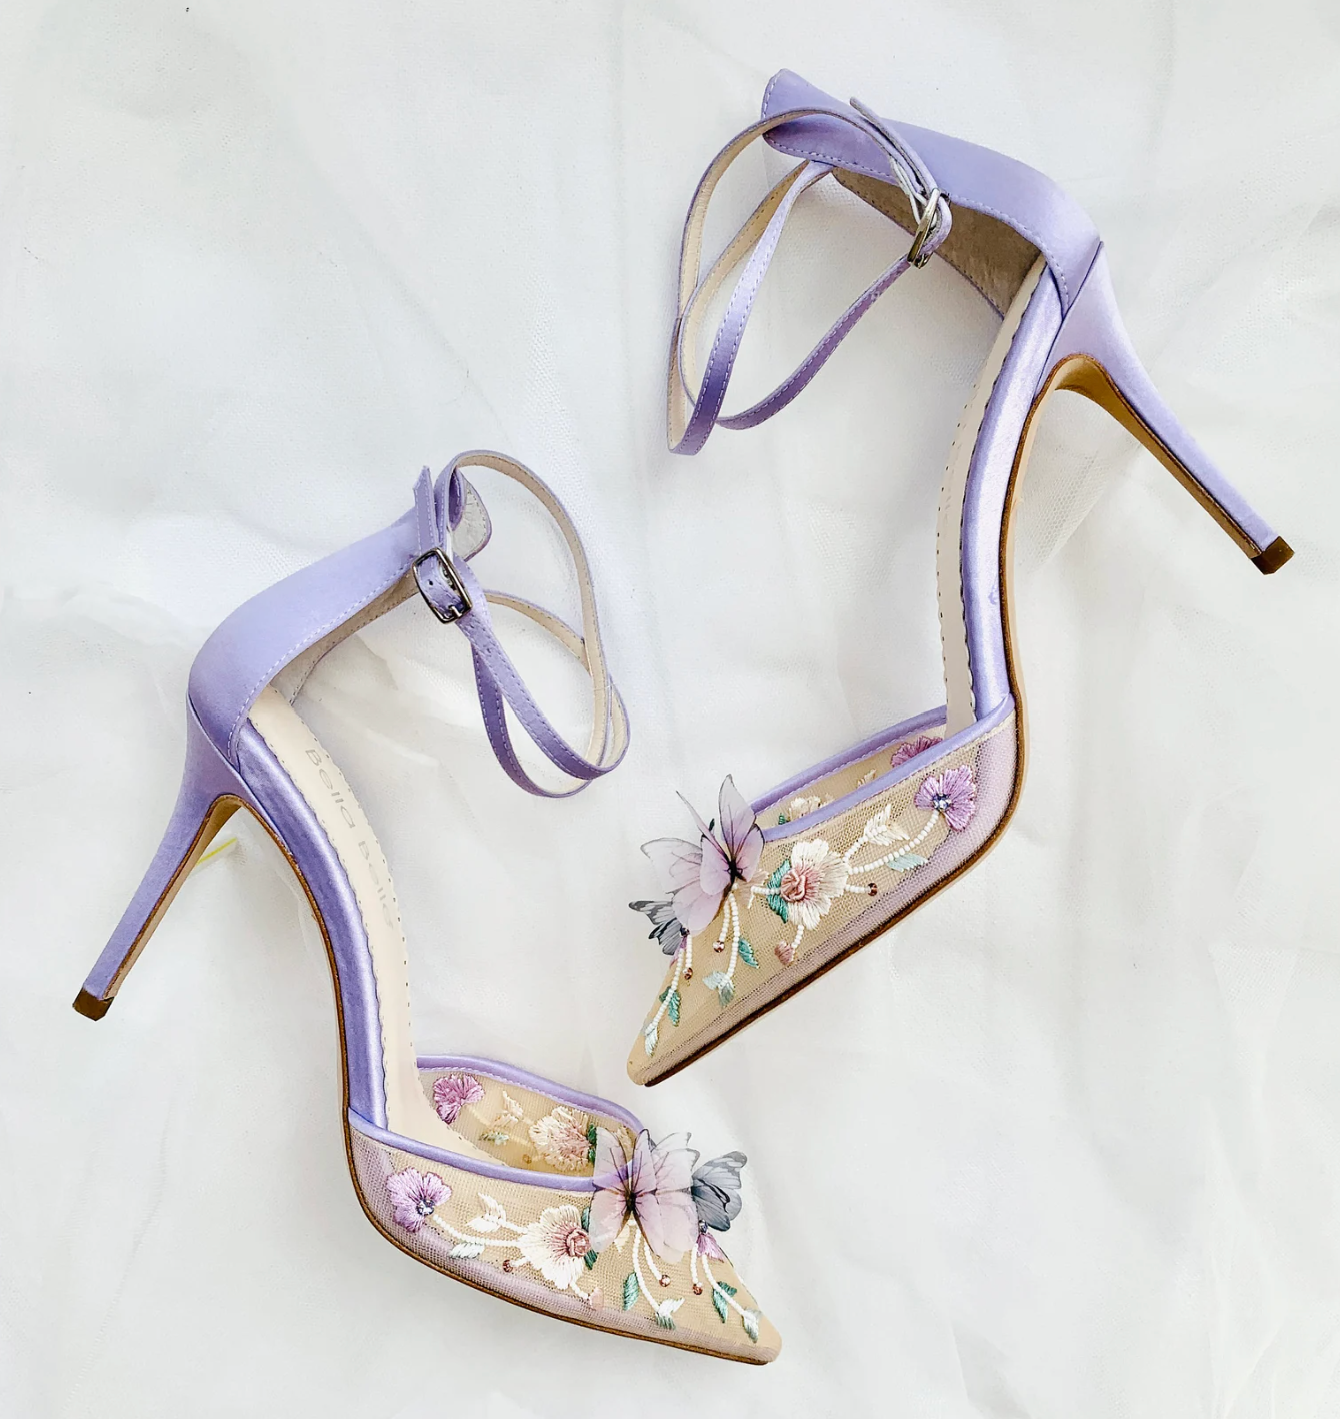 Garden Party heels